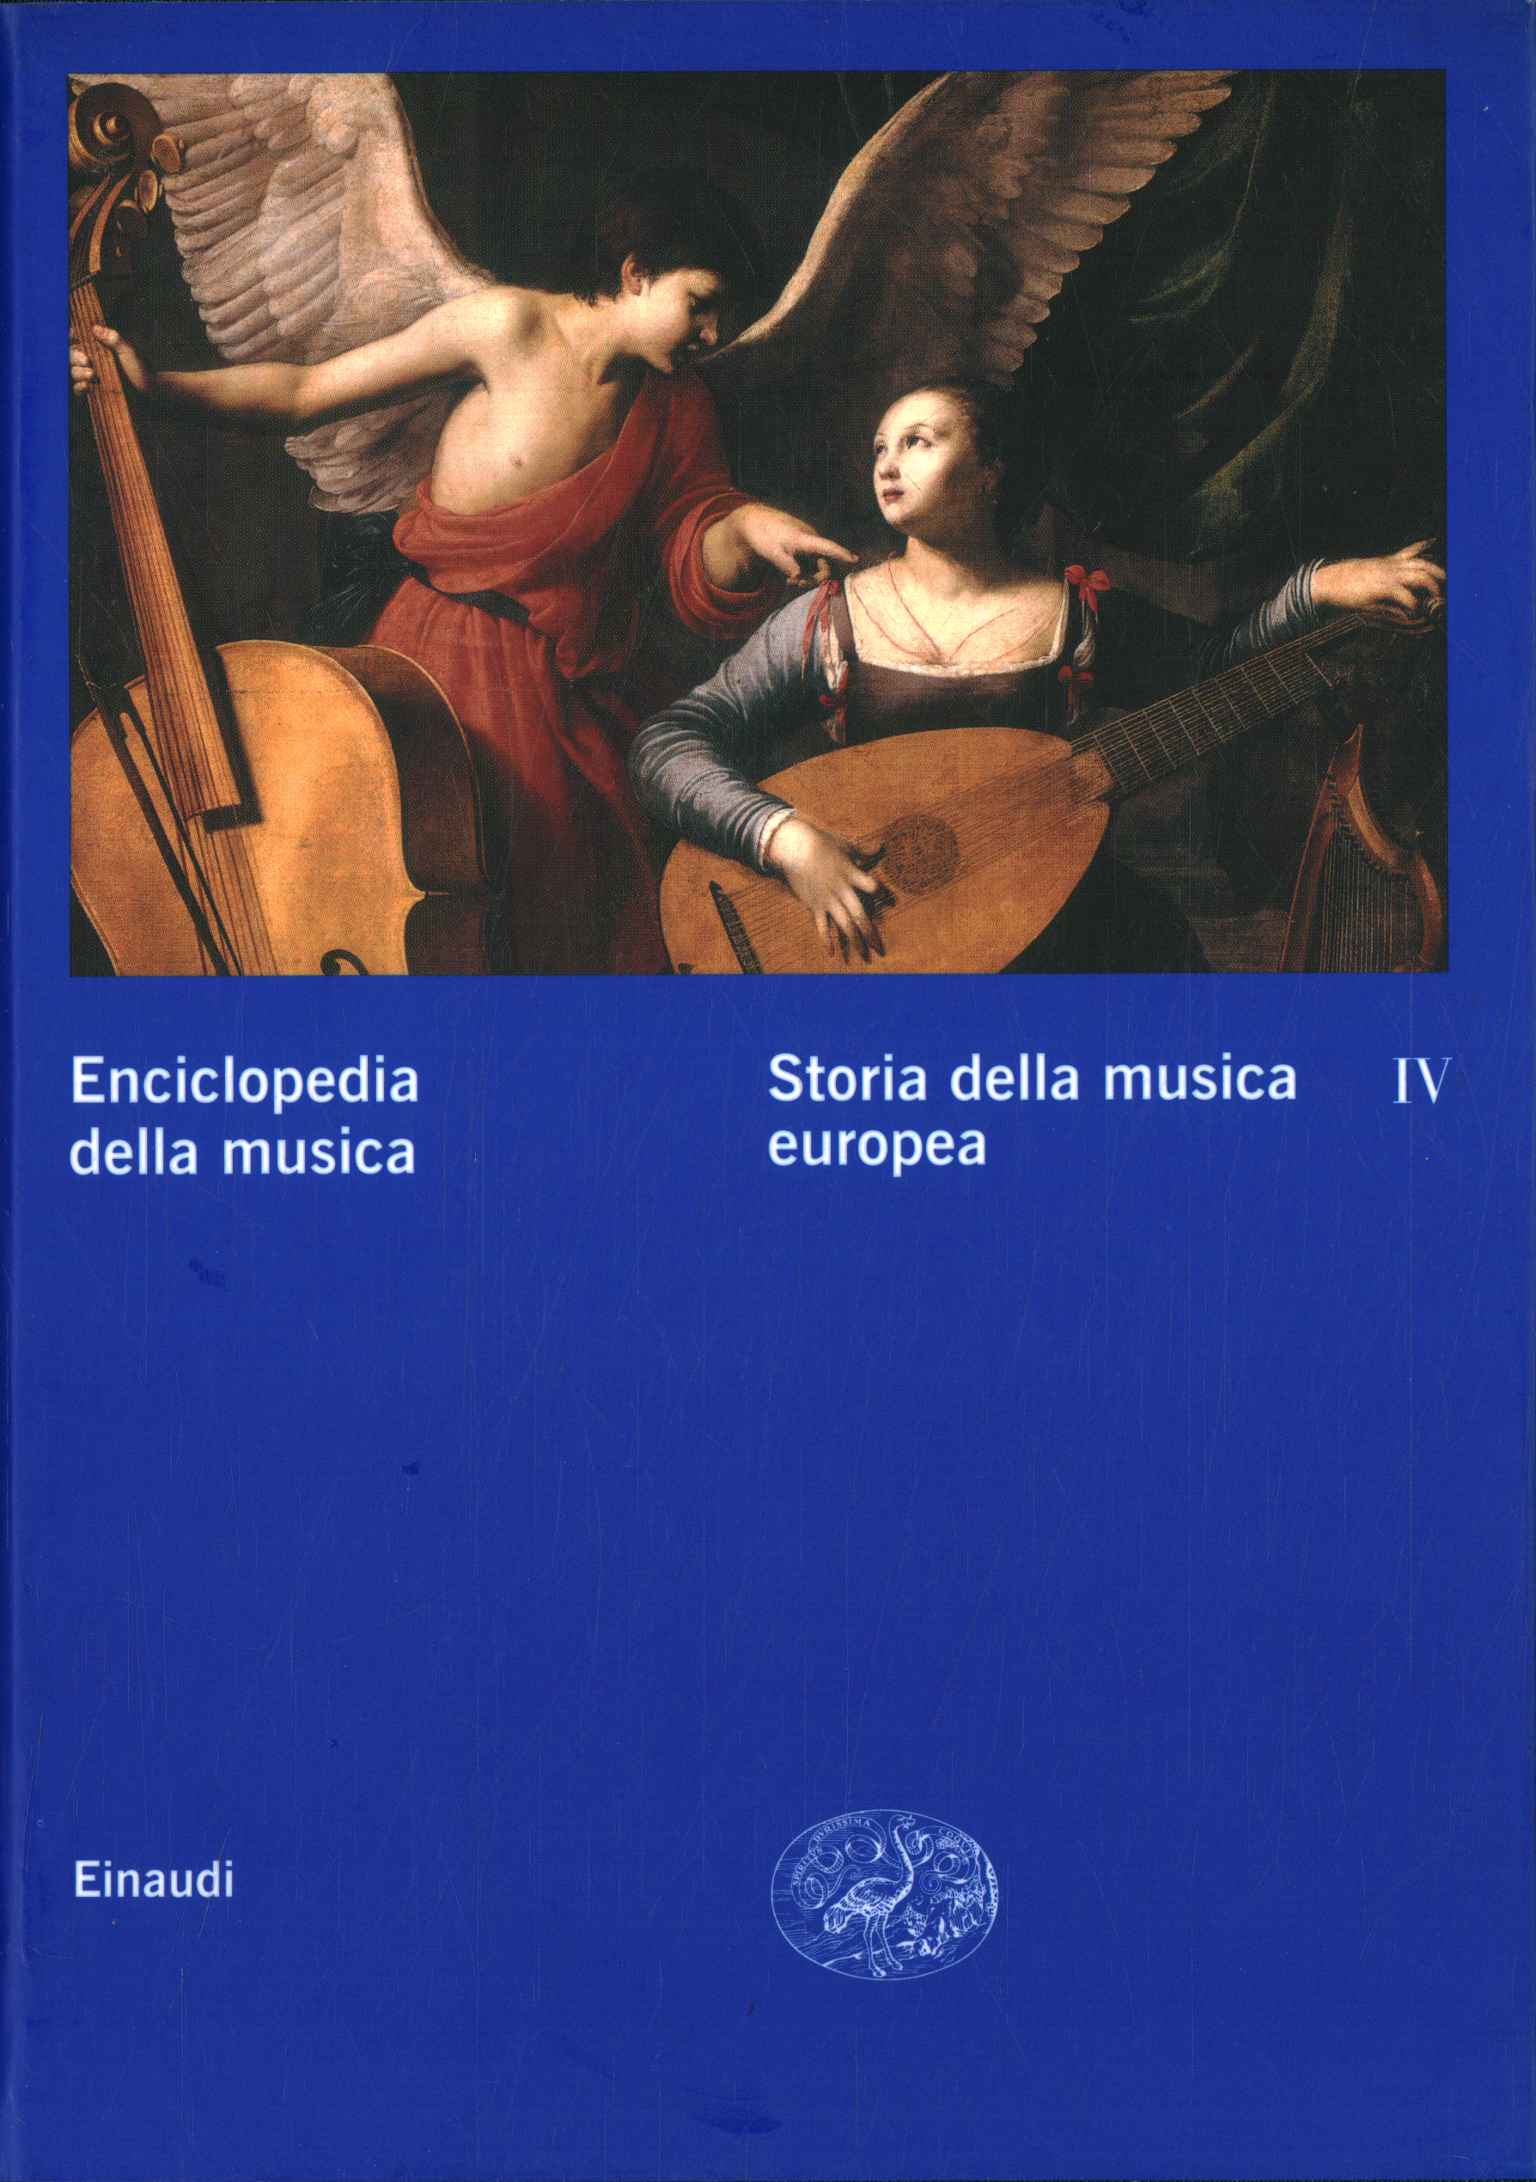 Enciclopedia de la música. Historia de